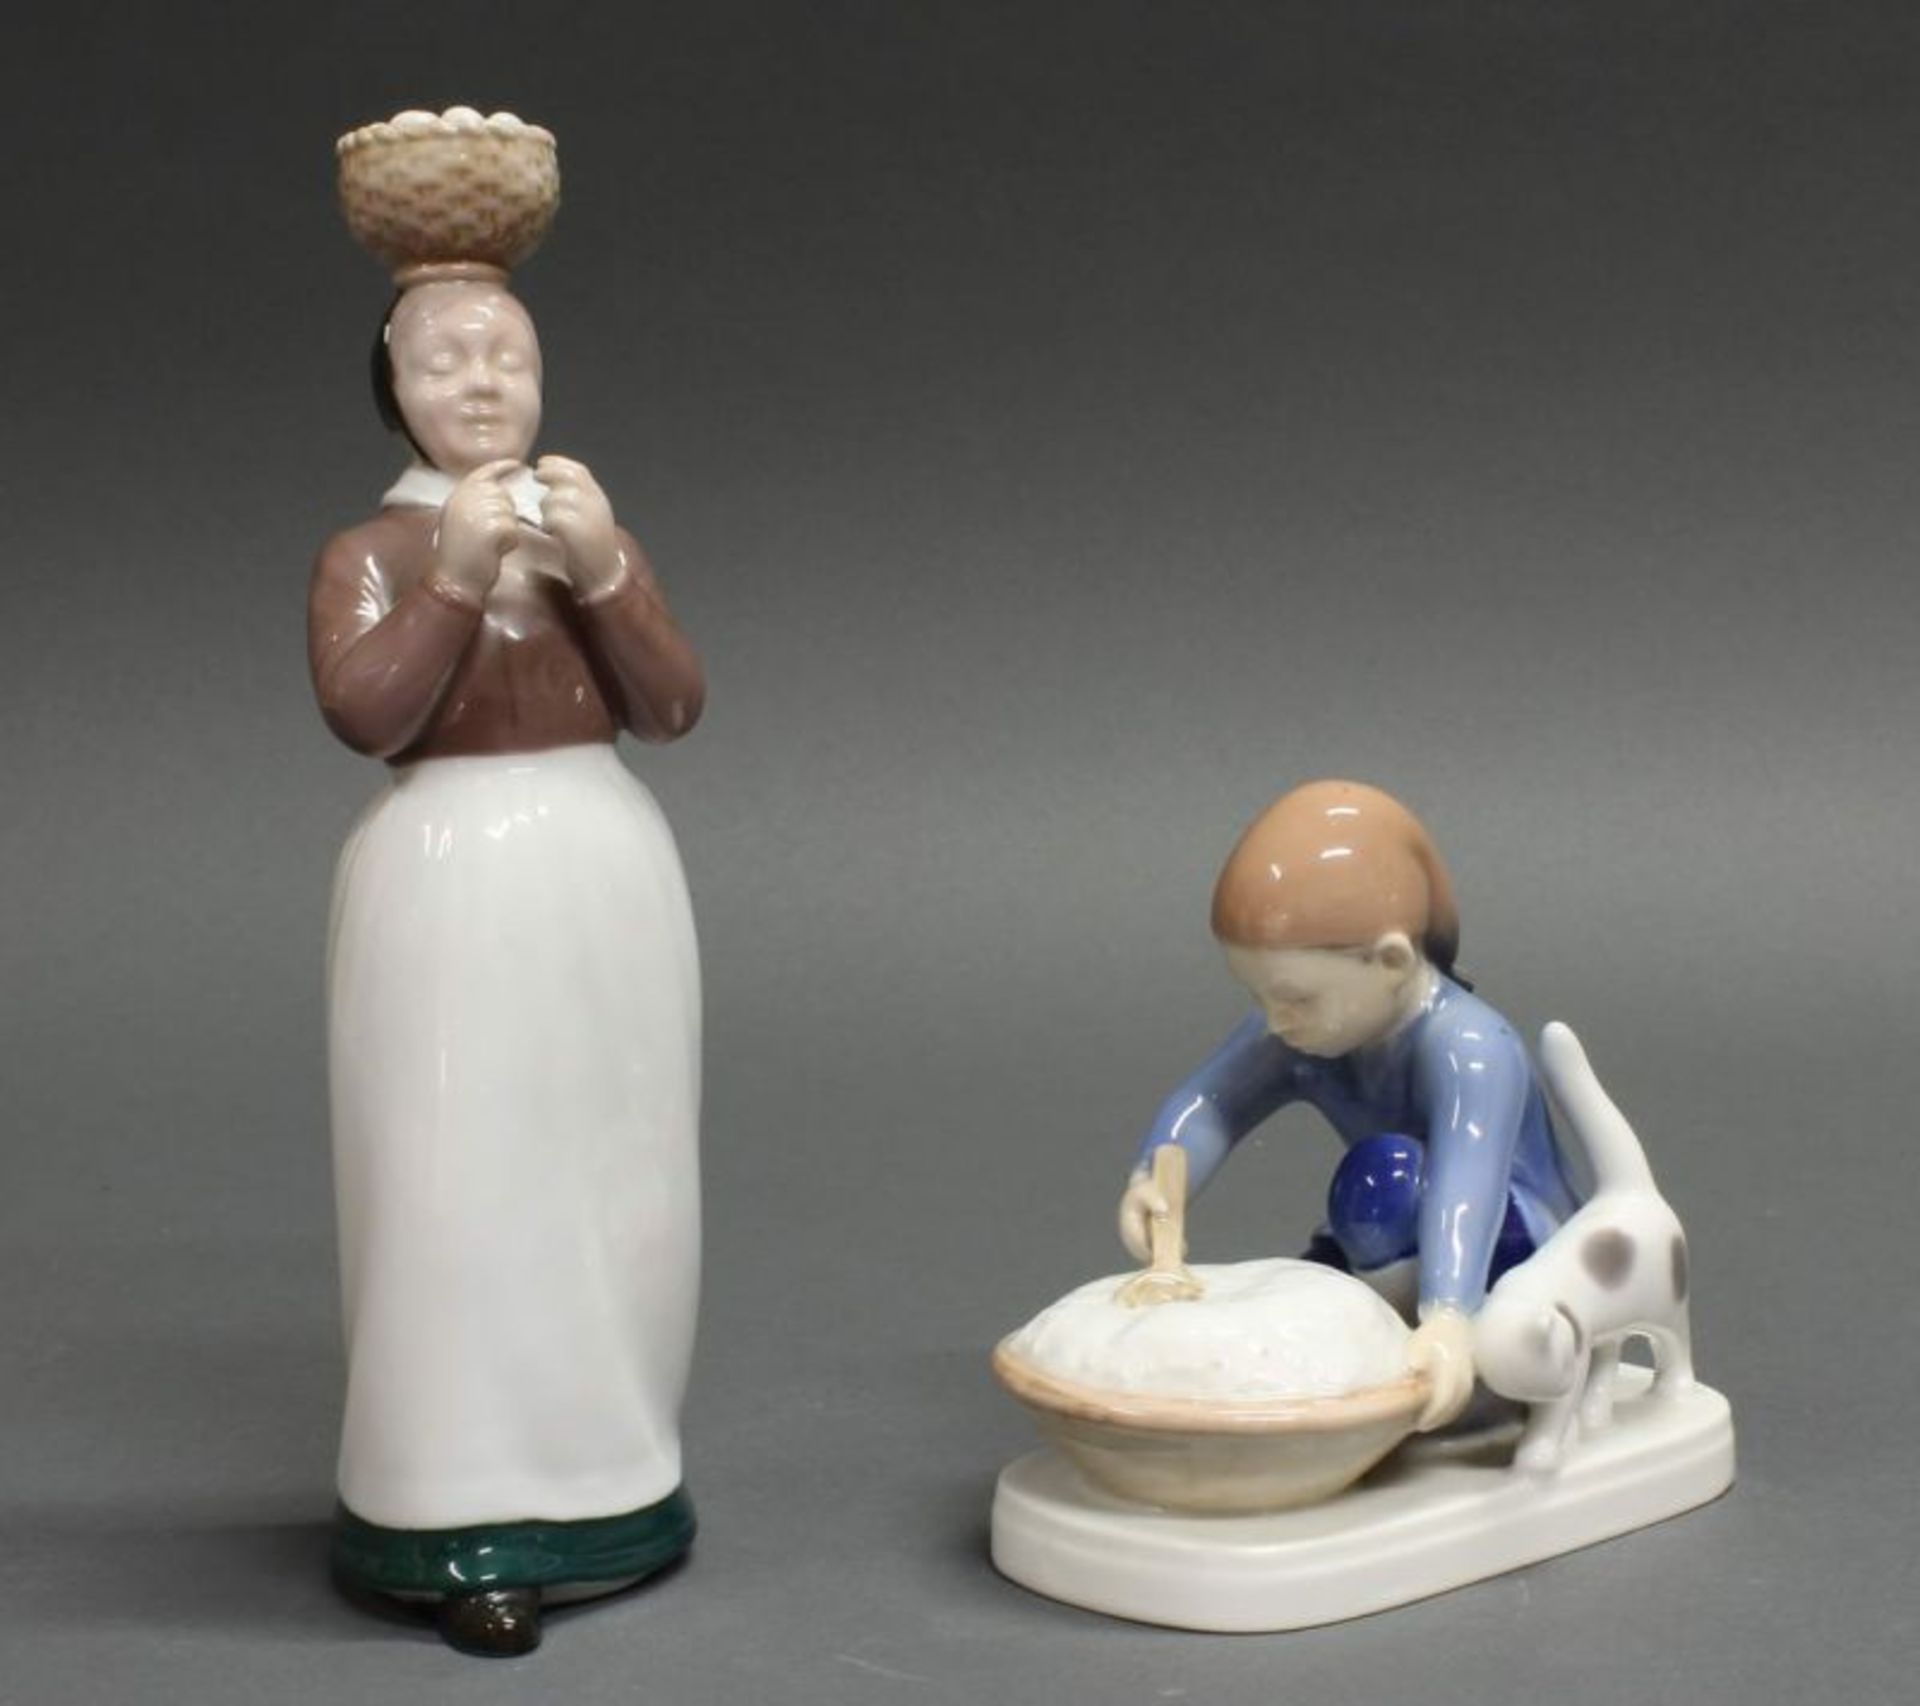 2 Porzellanfiguren, "Der Weihnachtsbrei", "Eierfrau", Bing & Groendahl, Modellnummern 2126 und 2305,